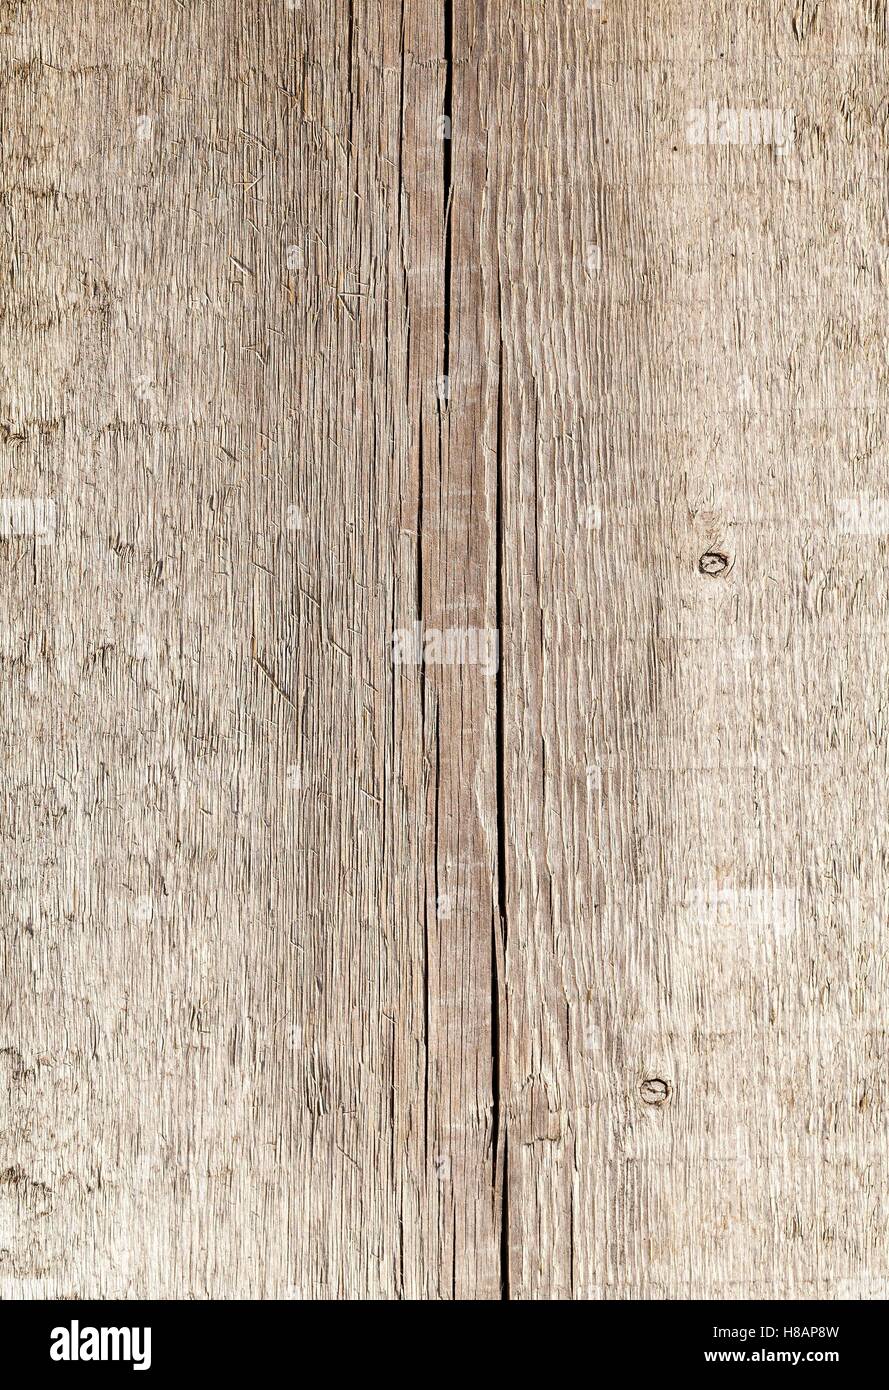 old wooden floor Stock Photo